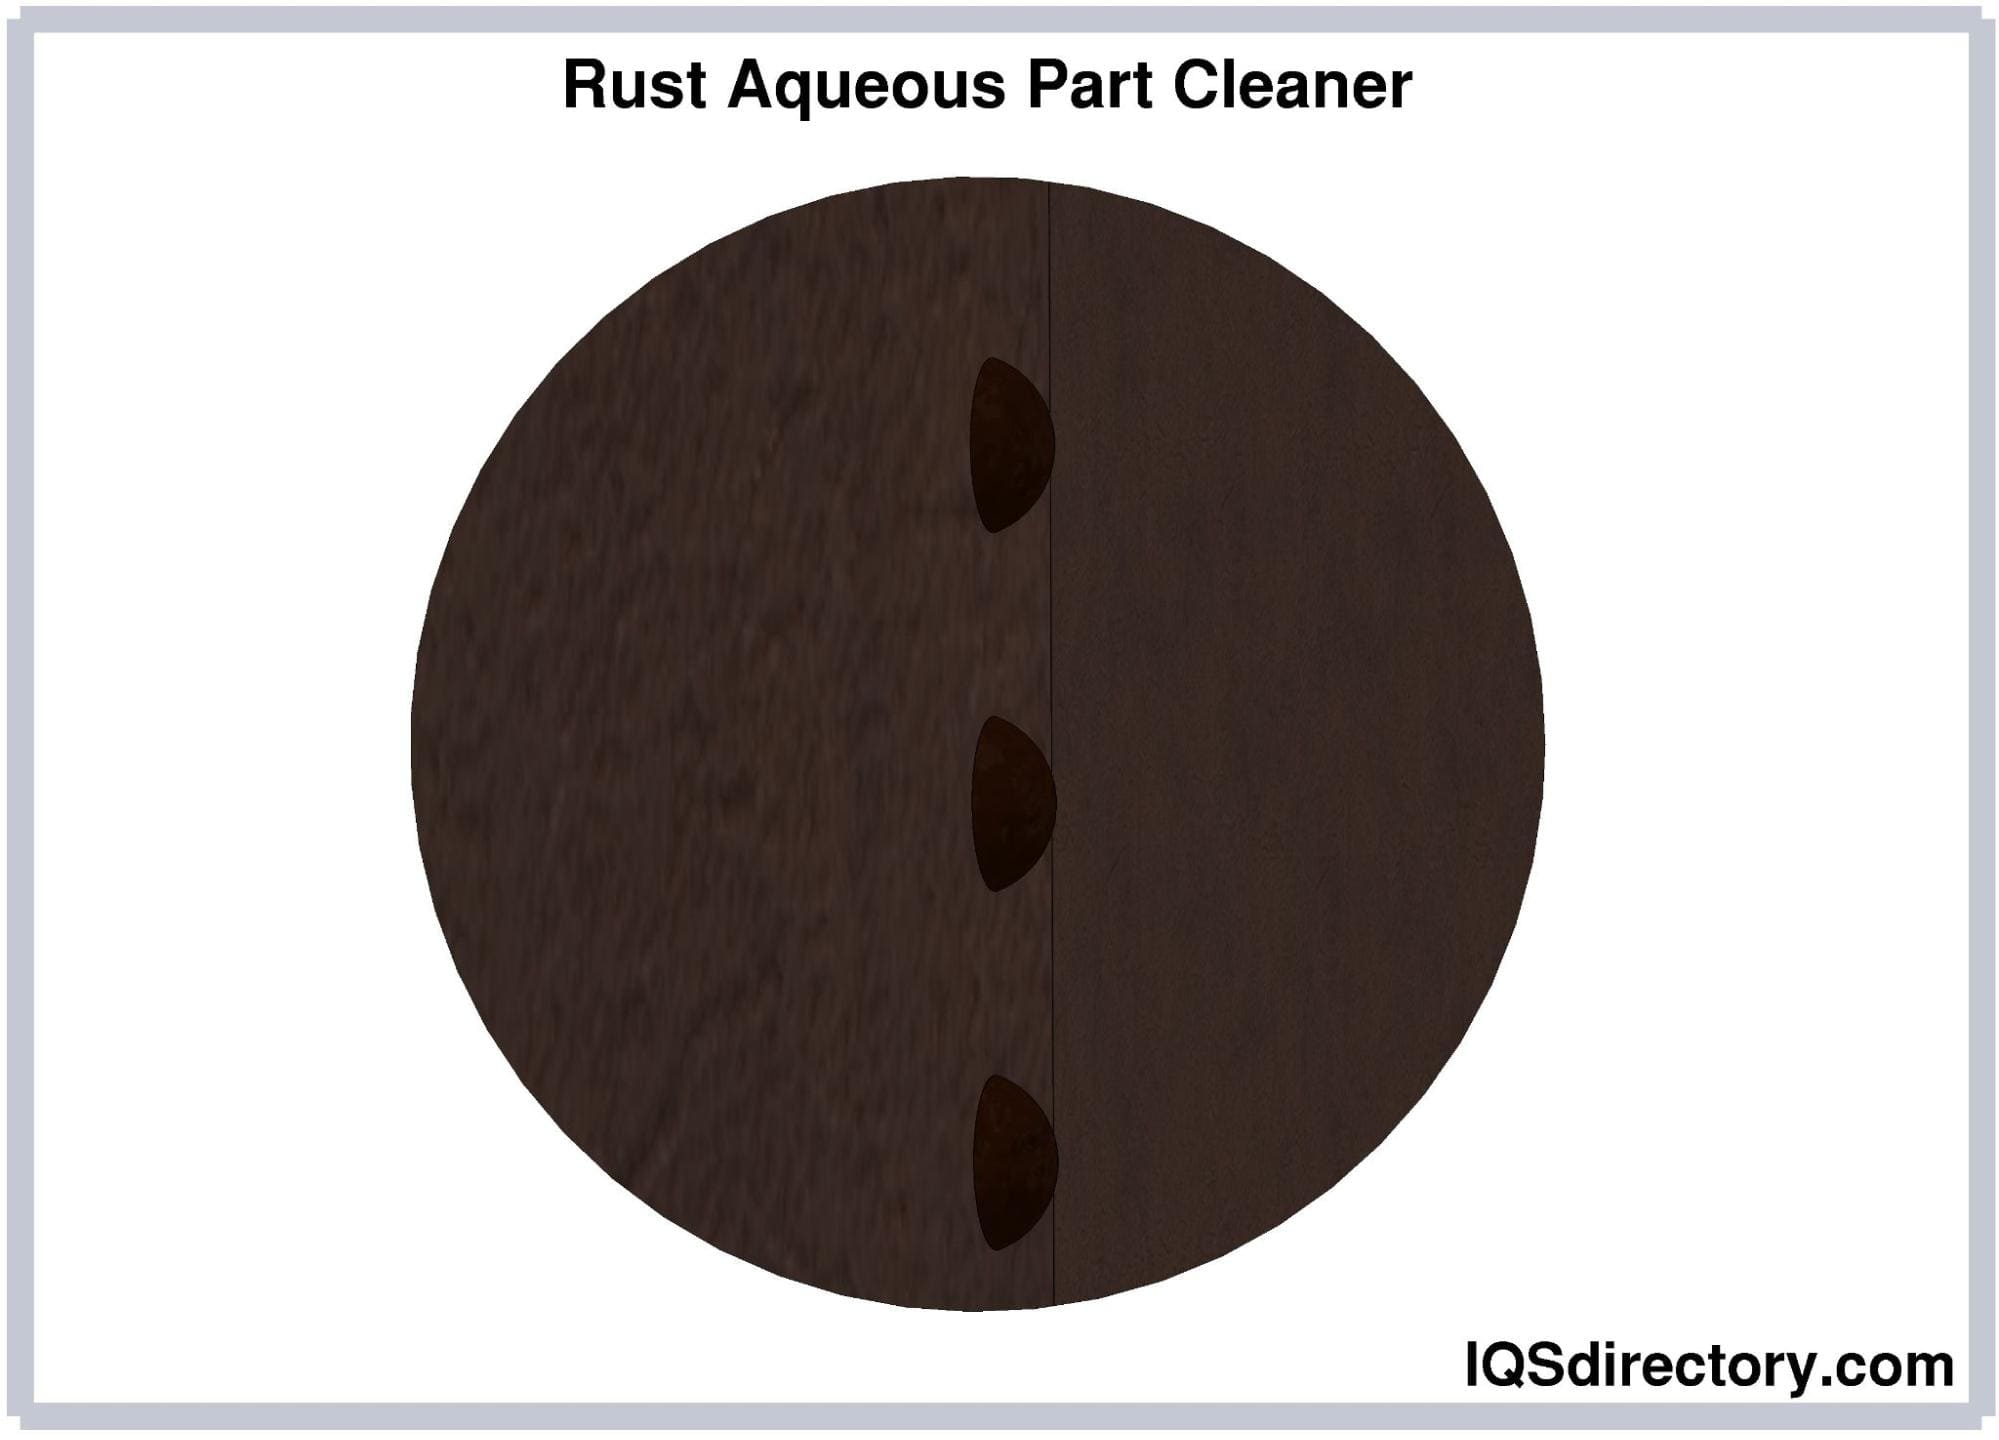 Rust Aqueous Part Cleaner